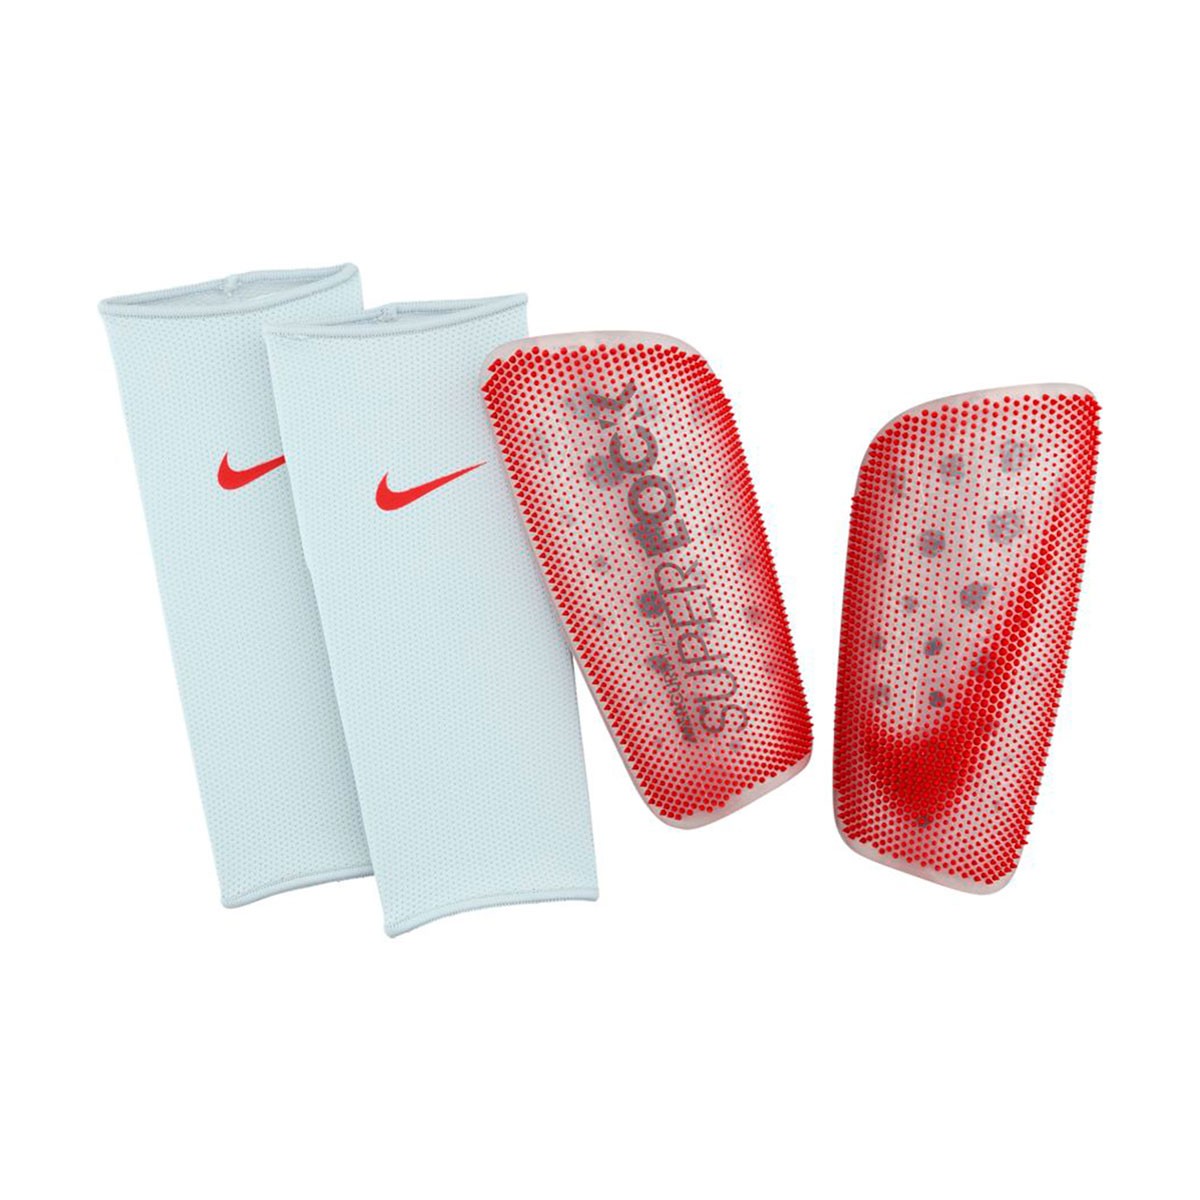 Espinillera Nike Lite Superlock Pure Platinum-Bright Crimson - Fútbol